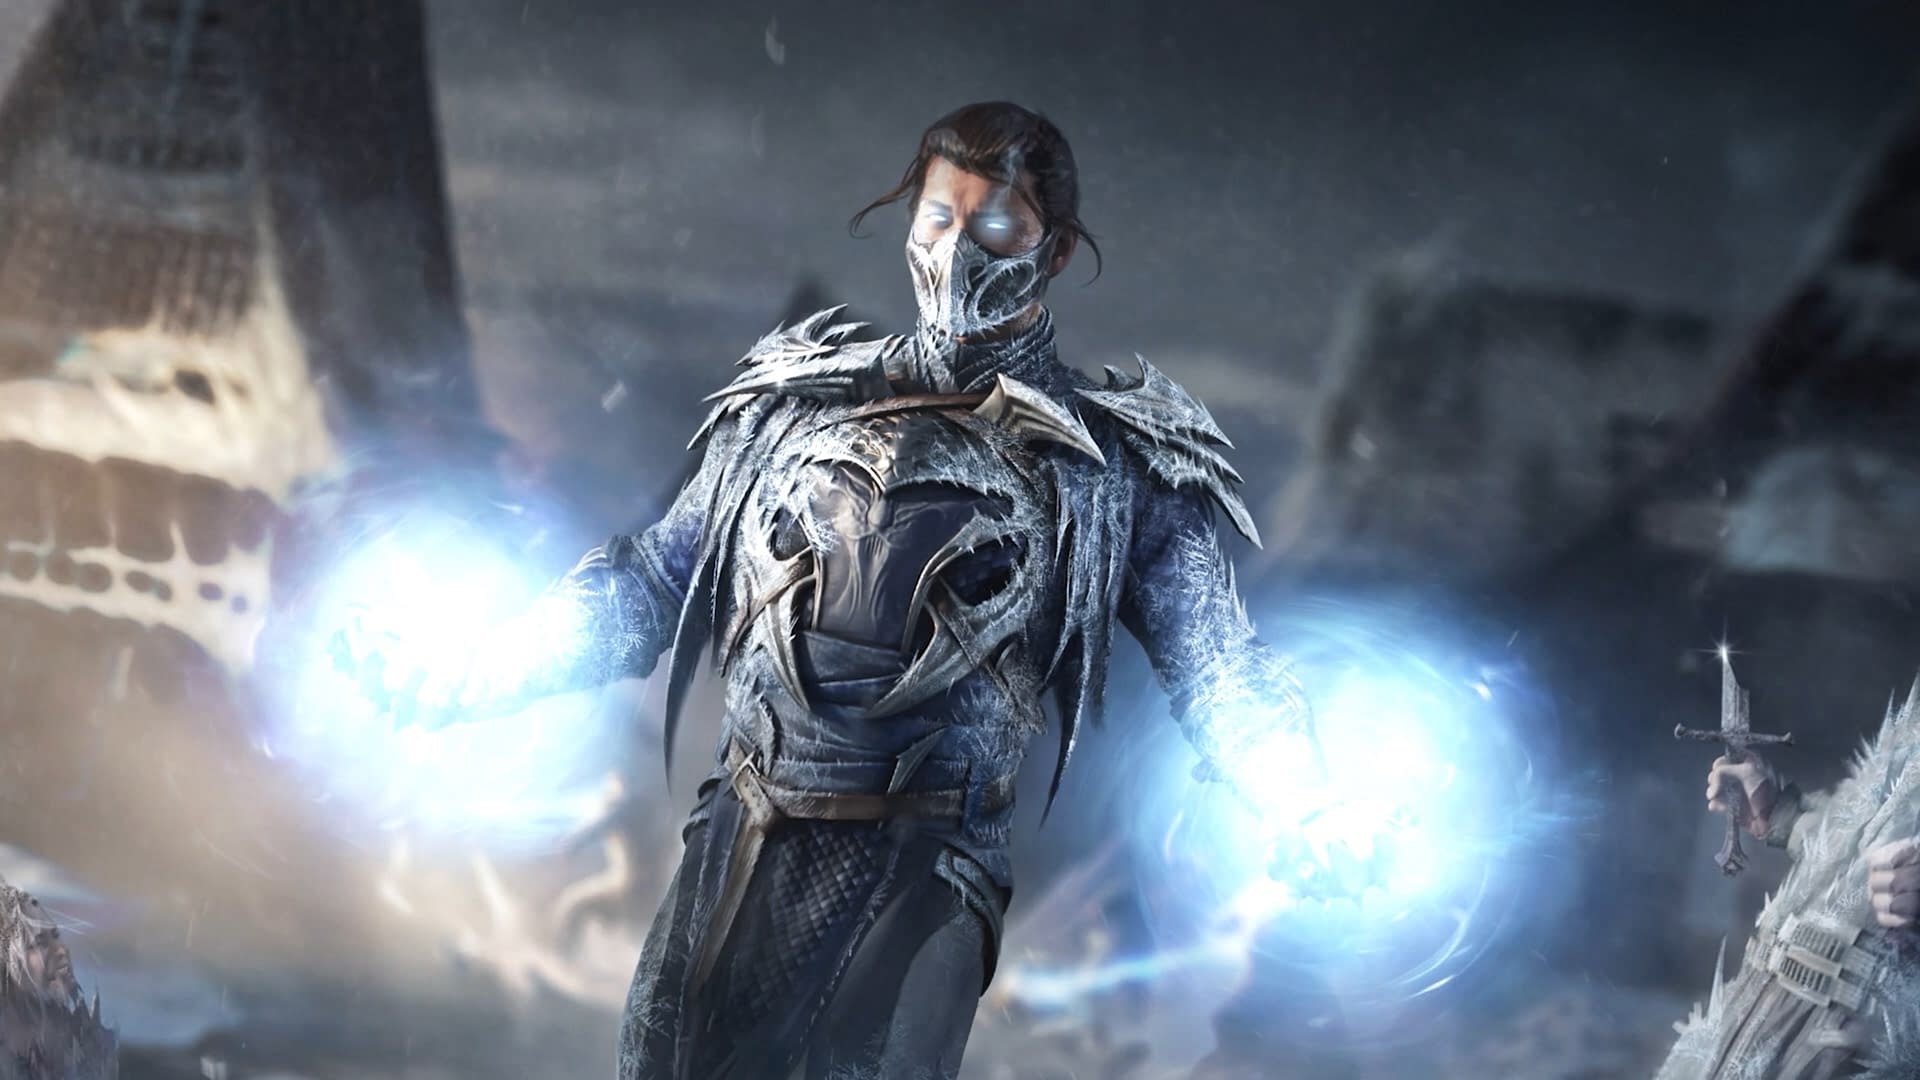 Mortal Kombat 1 introduces its new DLC character